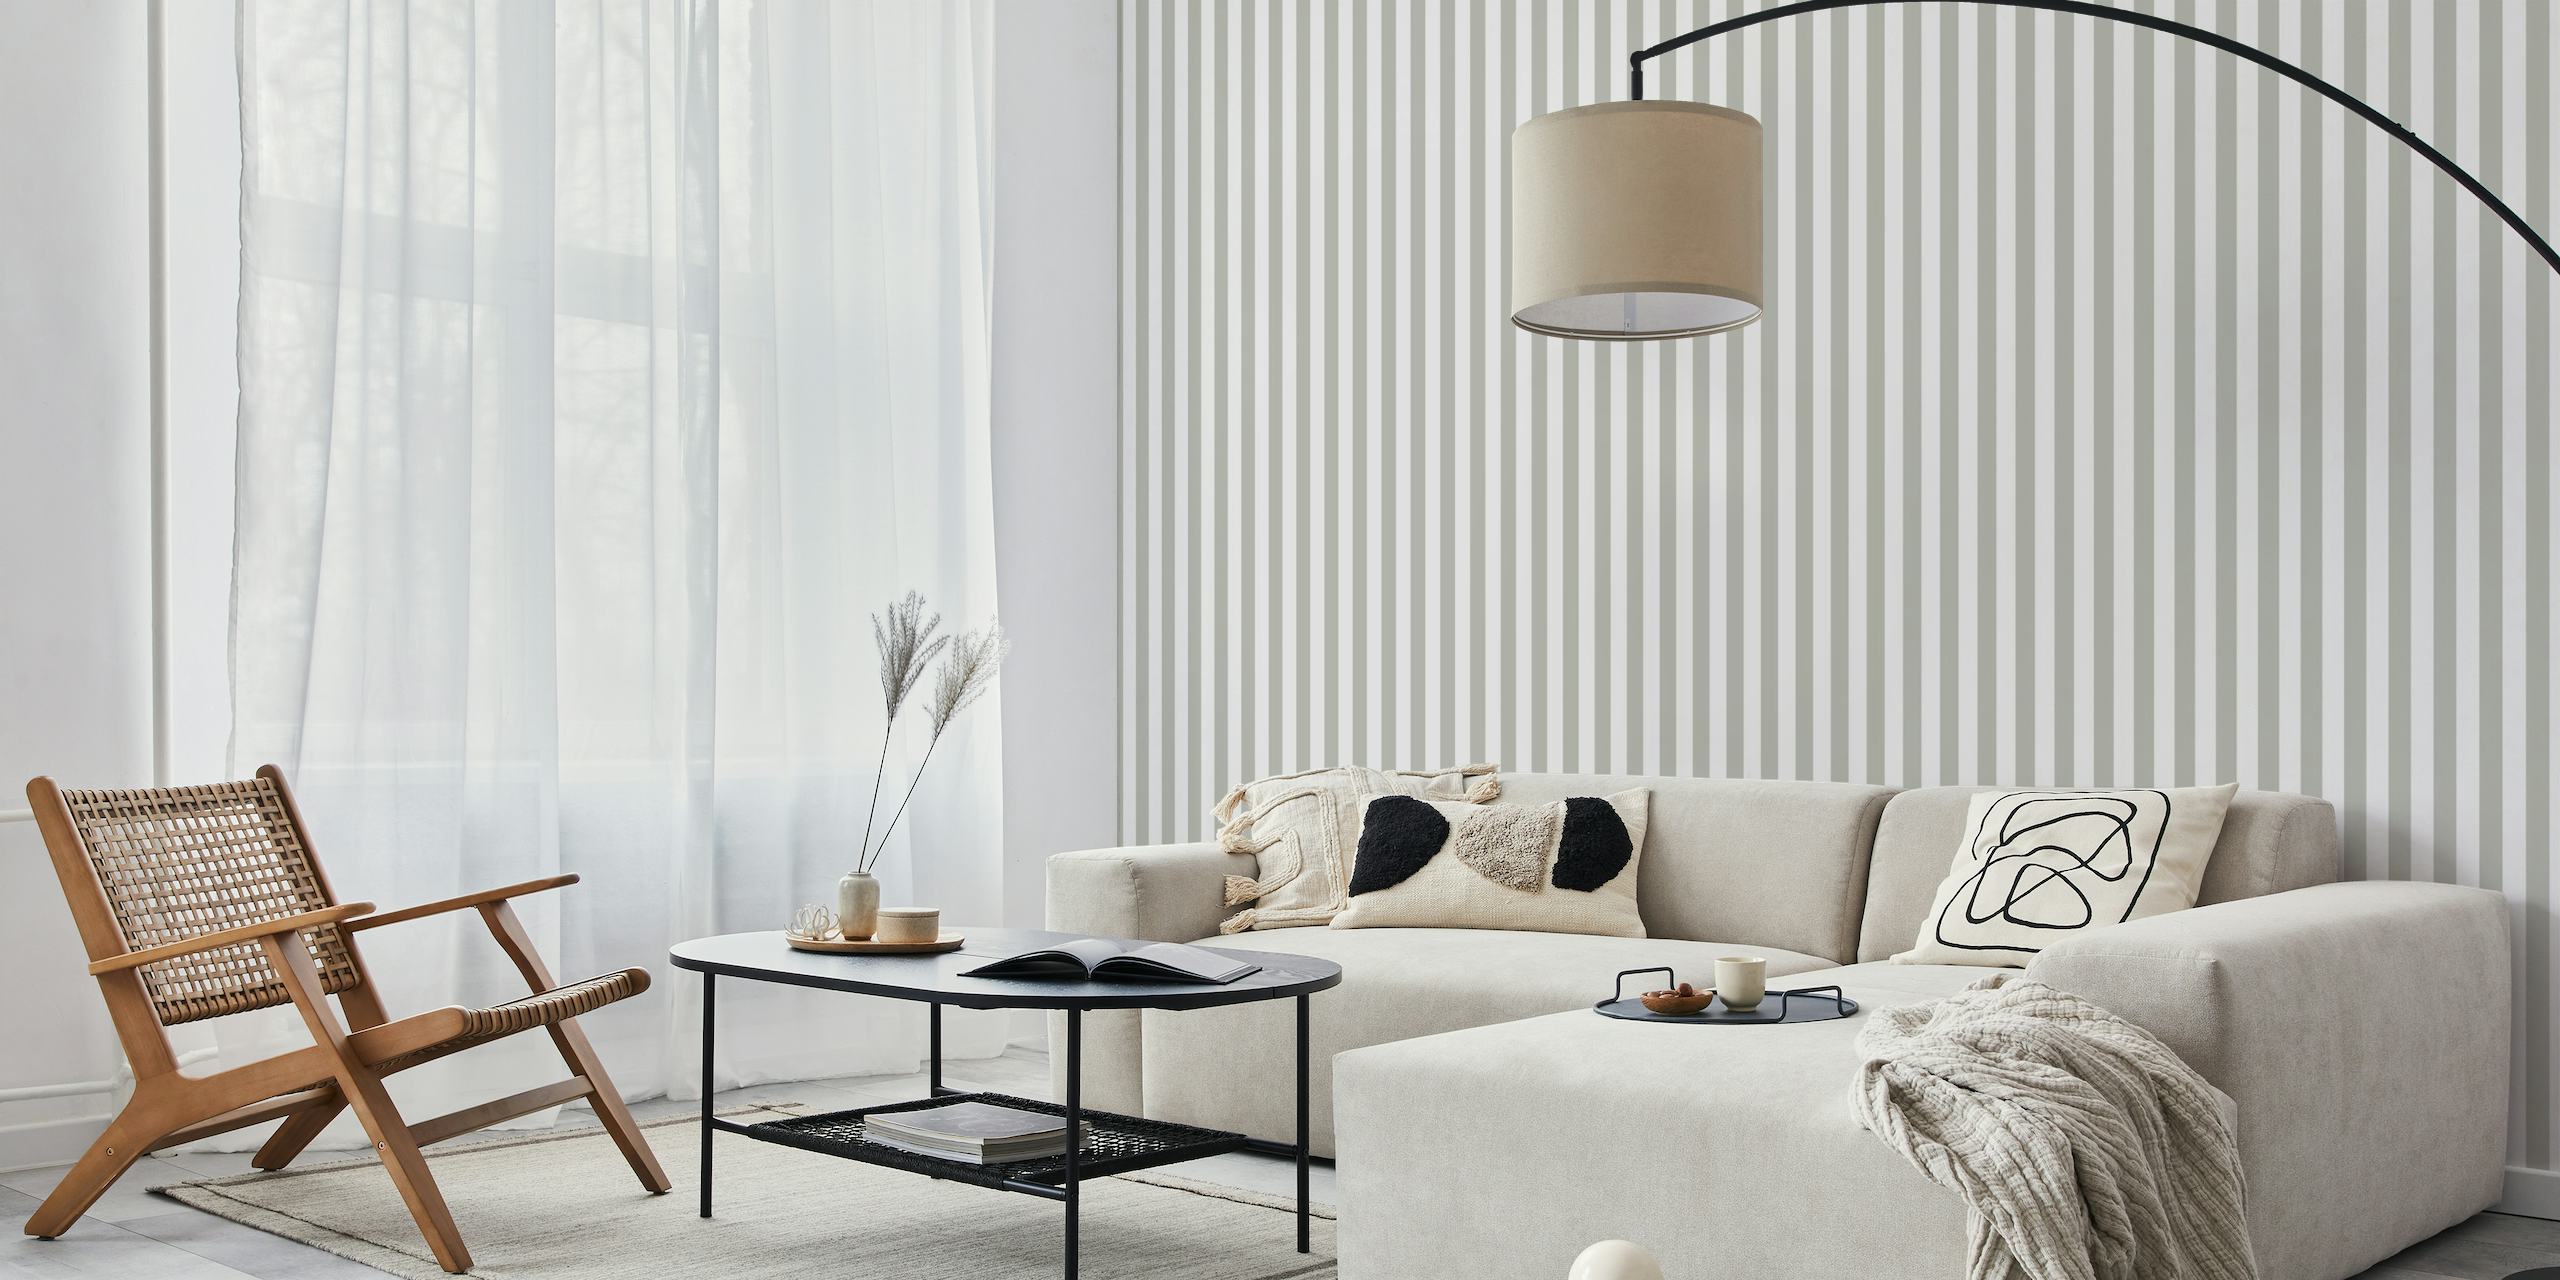 Scandi Stripes - Grå tapet som visar subtila grå och vita vertikala ränder för en modern minimalistisk inredning